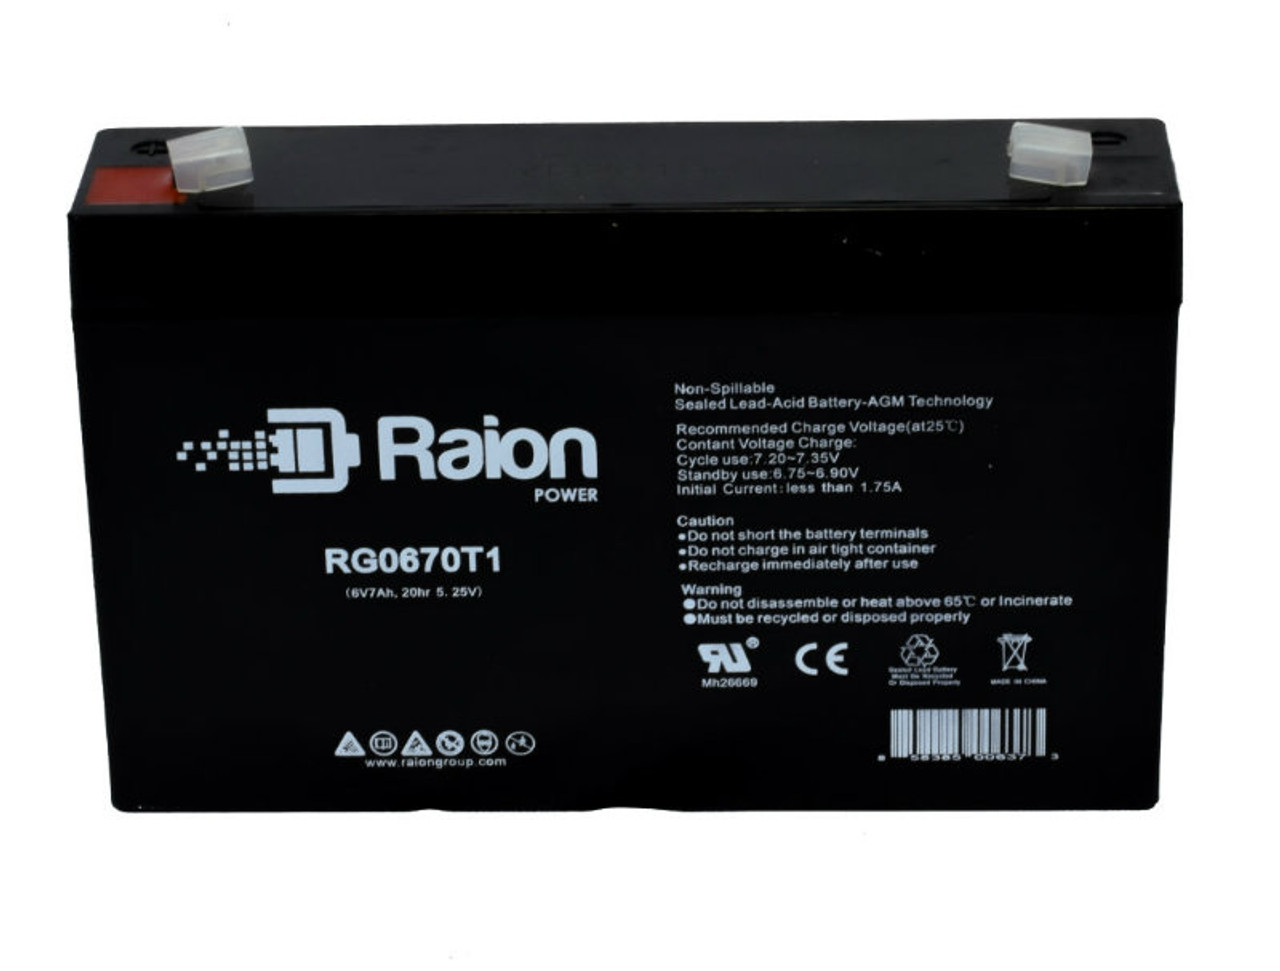 Raion Power RG0670T1 SLA Battery for KRAFT VRLA 6V7 OEM Battery